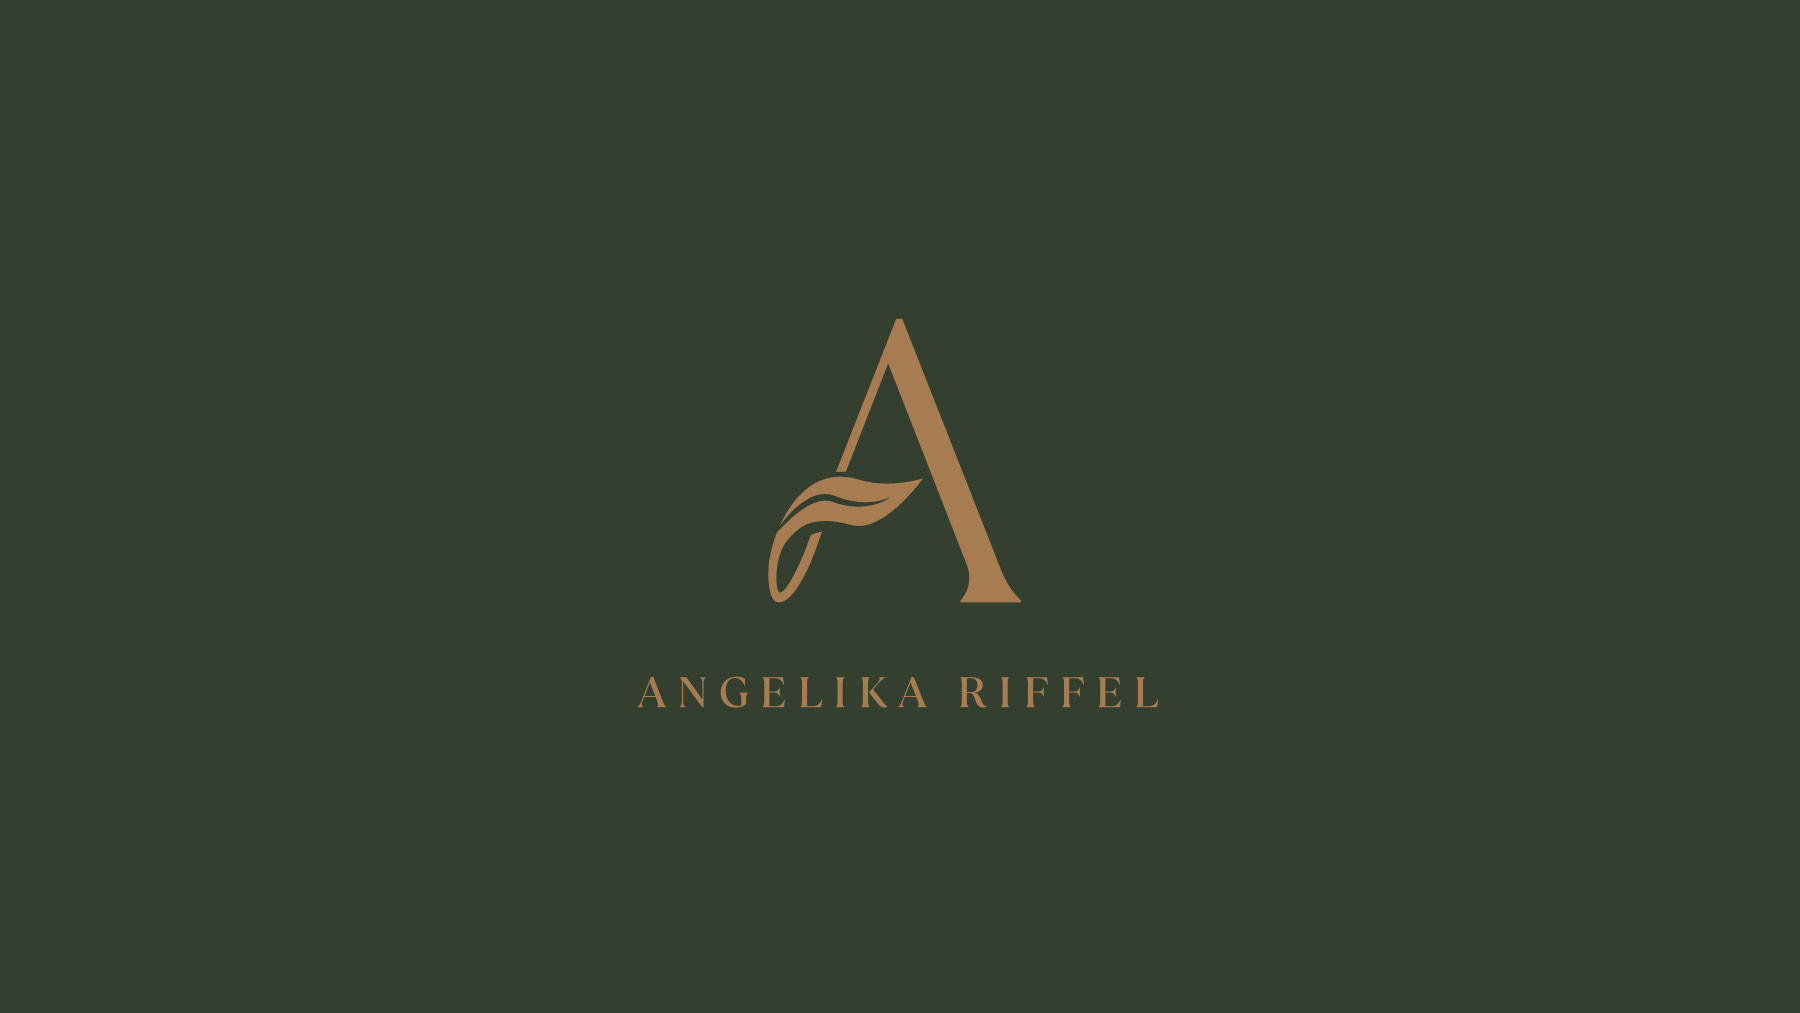 Angelika Riffel